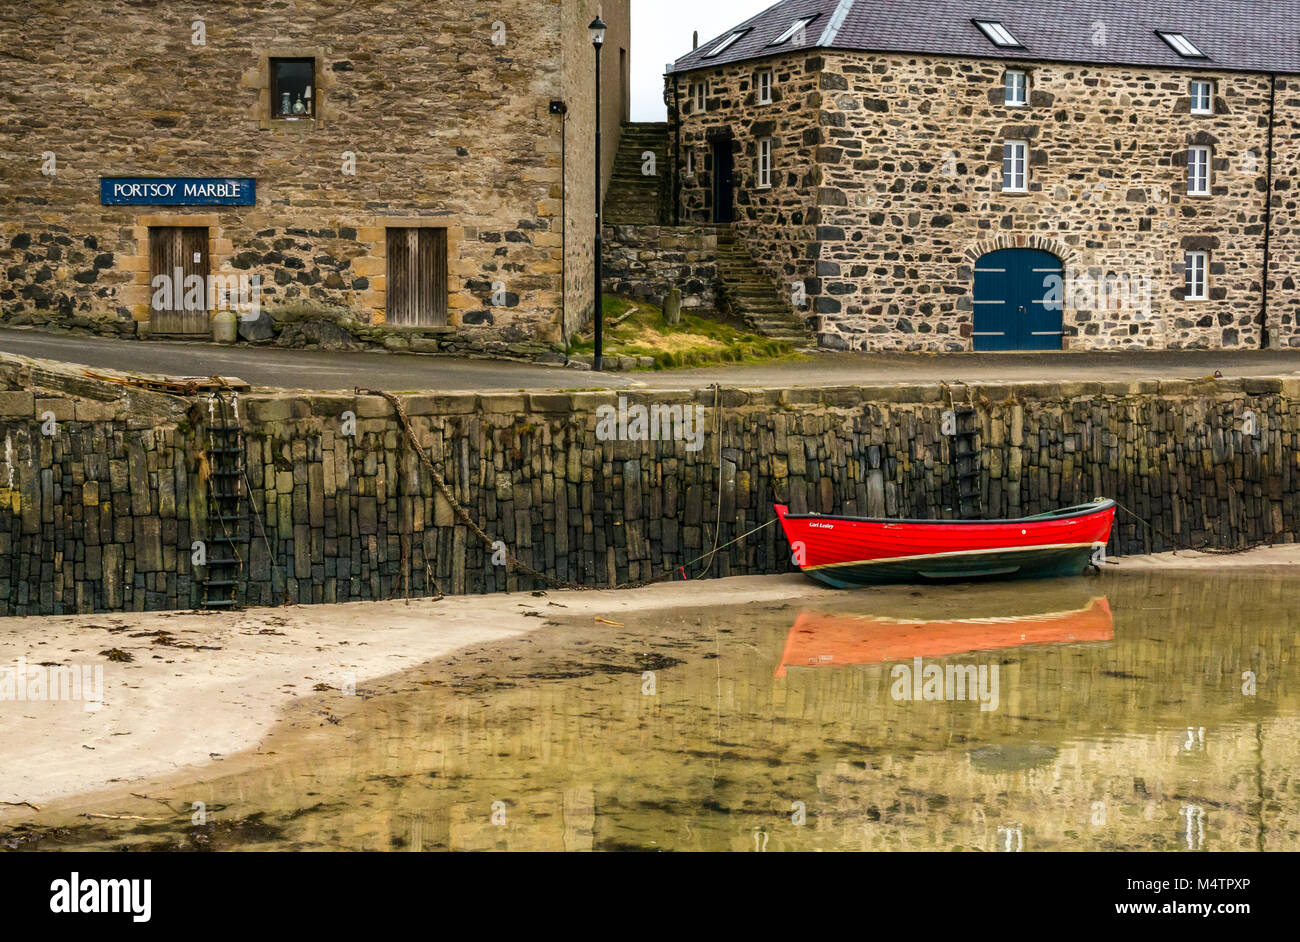 Rossa piccola barca a remi con la bassa marea, porto pittoresco, Dinnet, Aberdeenshire, Scozia, con riflessi dell'acqua e degli edifici storici Foto Stock